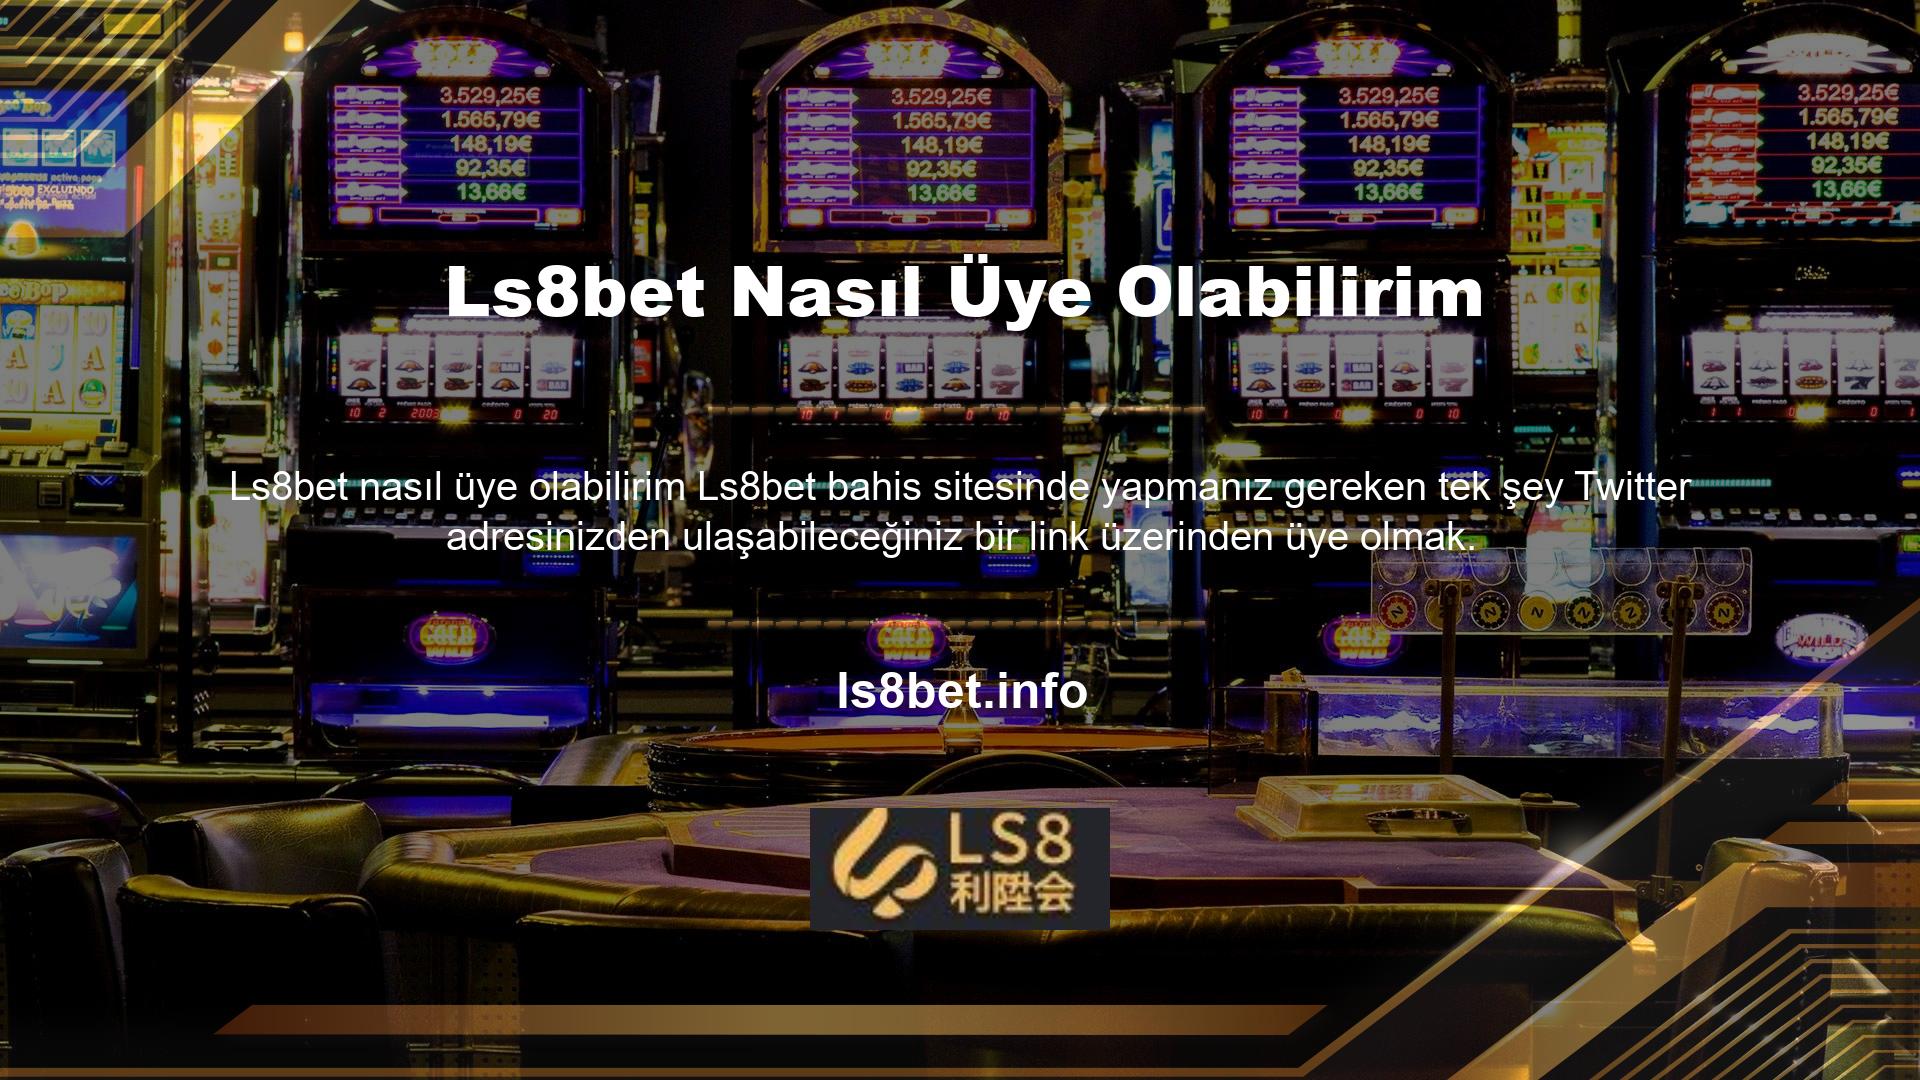 Üyelerin yeni eklenen casino siteleri arasında aradıklarını bulmaları zor olabilir ancak üyelik anlaşmalı sitelere kolayca ulaşabilir ve aradıkları siteyi tanıtabilirler